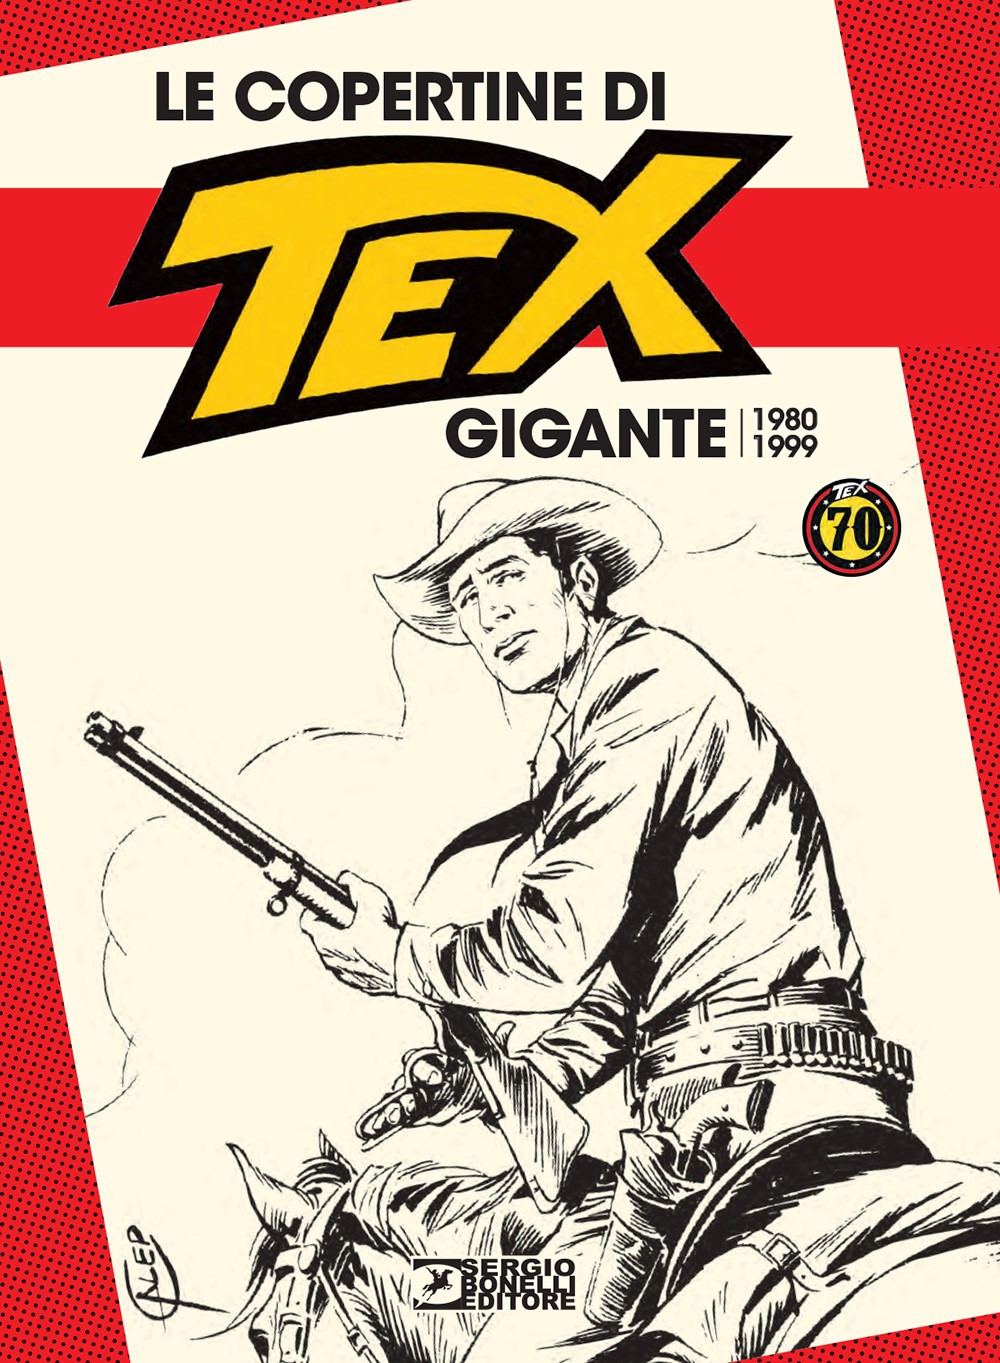 Libri Copertine Di Tex Gigante 1980-1999 Le NUOVO SIGILLATO EDIZIONE DEL SUBITO DISPONIBILE